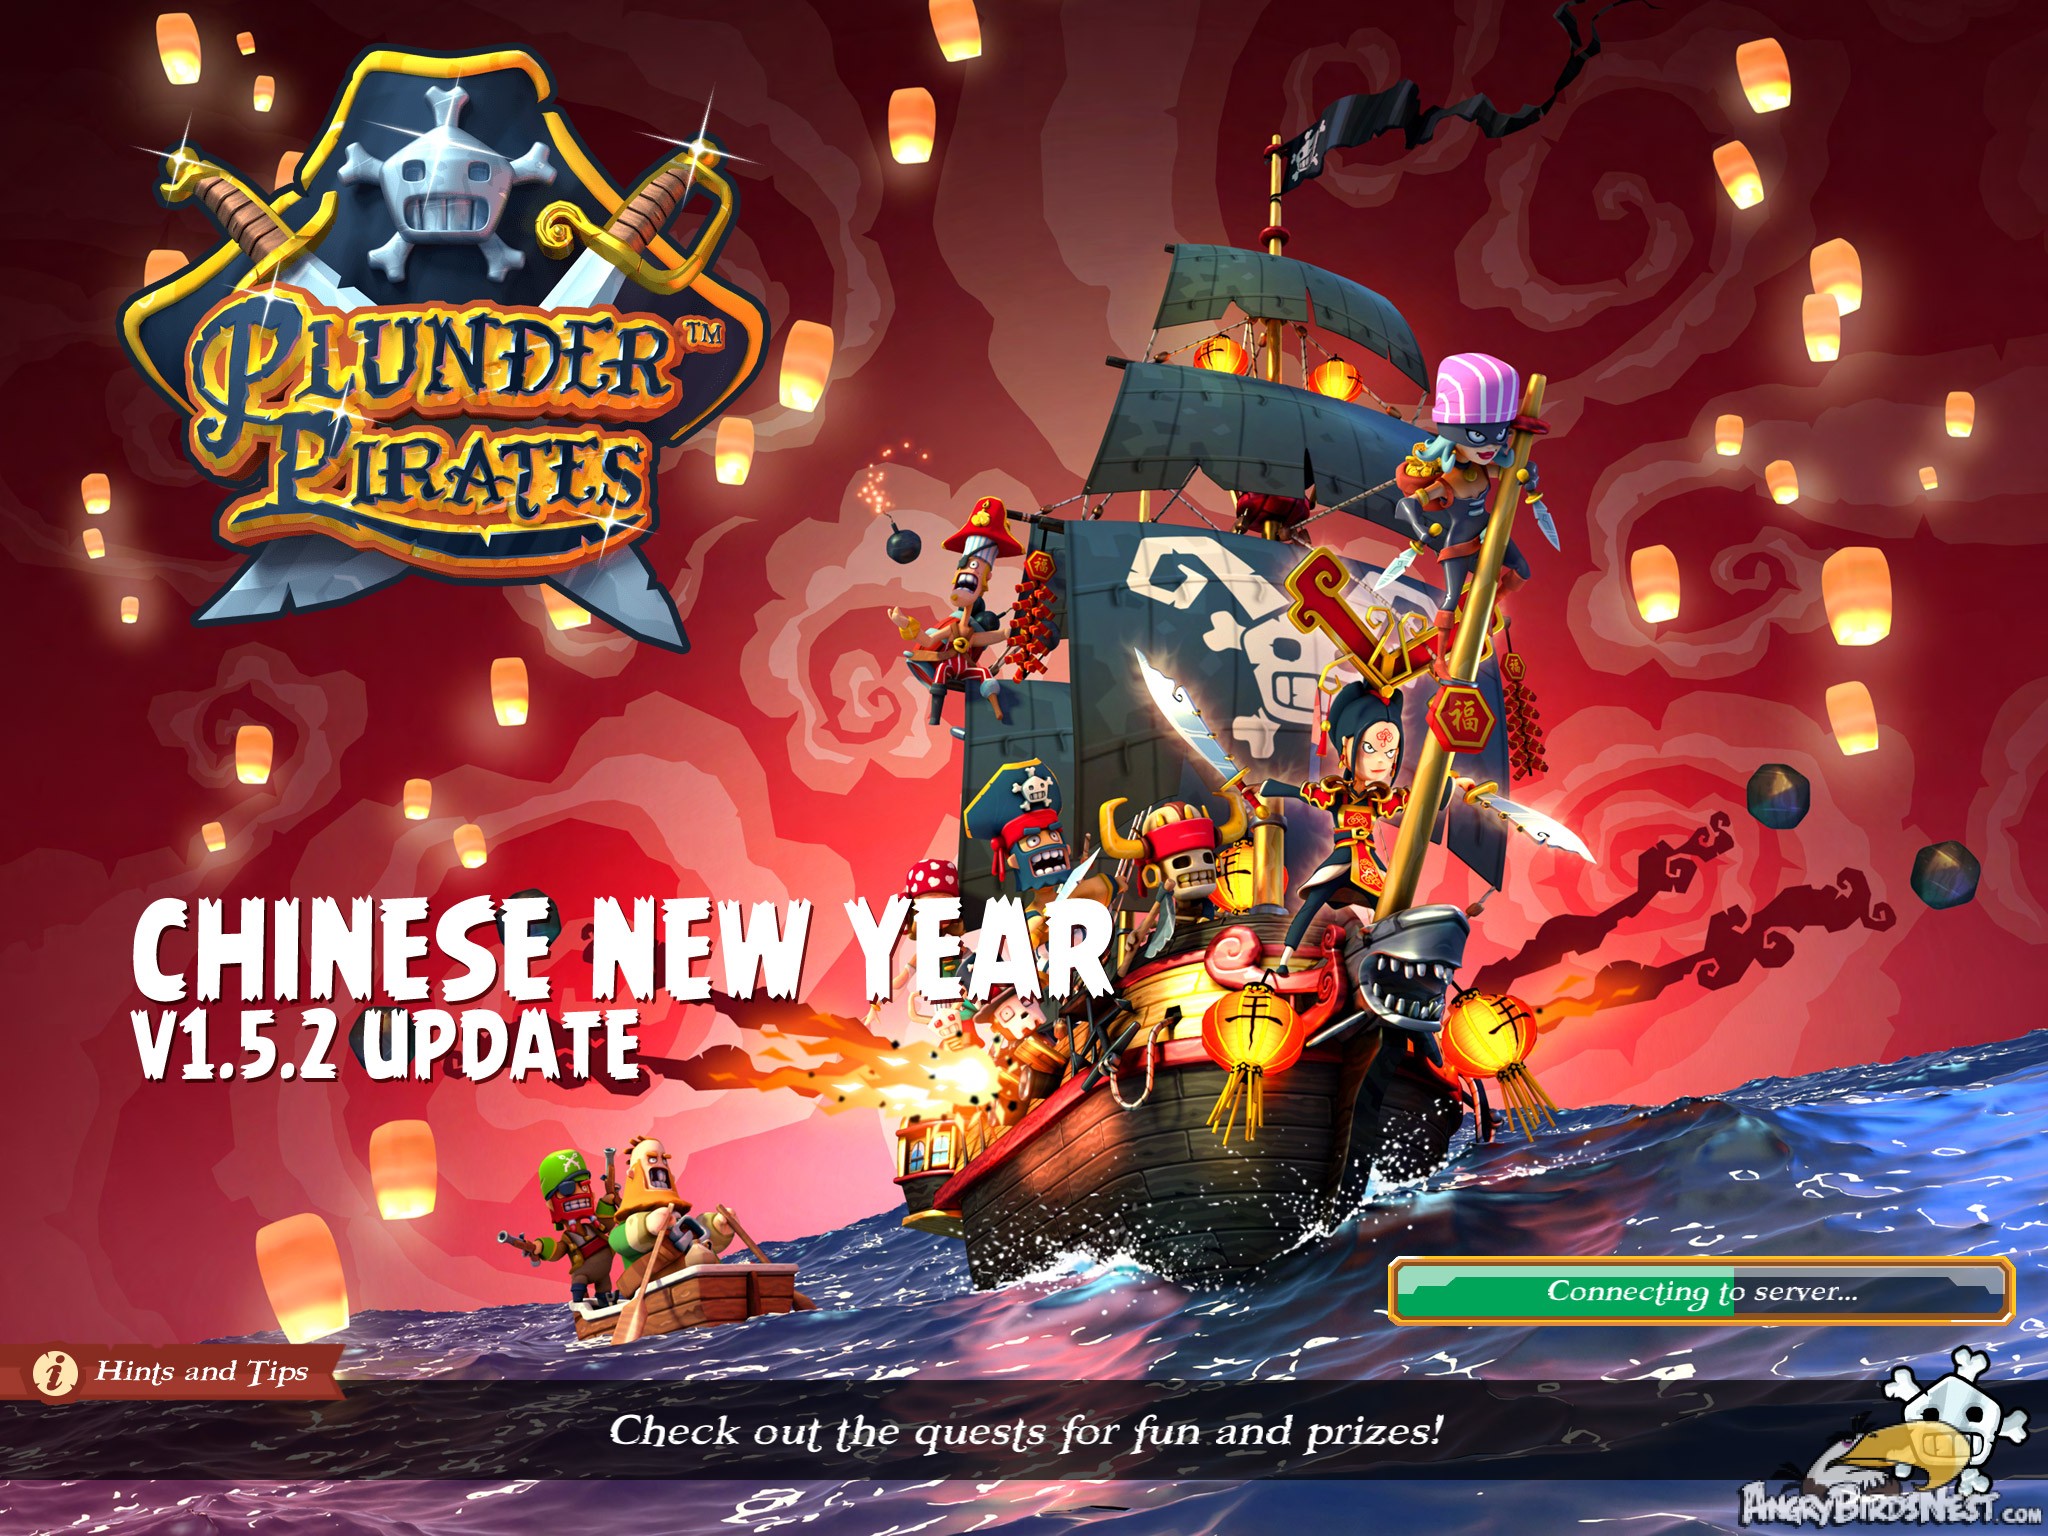 Plunder Pirates Rovio Stars v1.5.2 Chinese New Year Update Splash